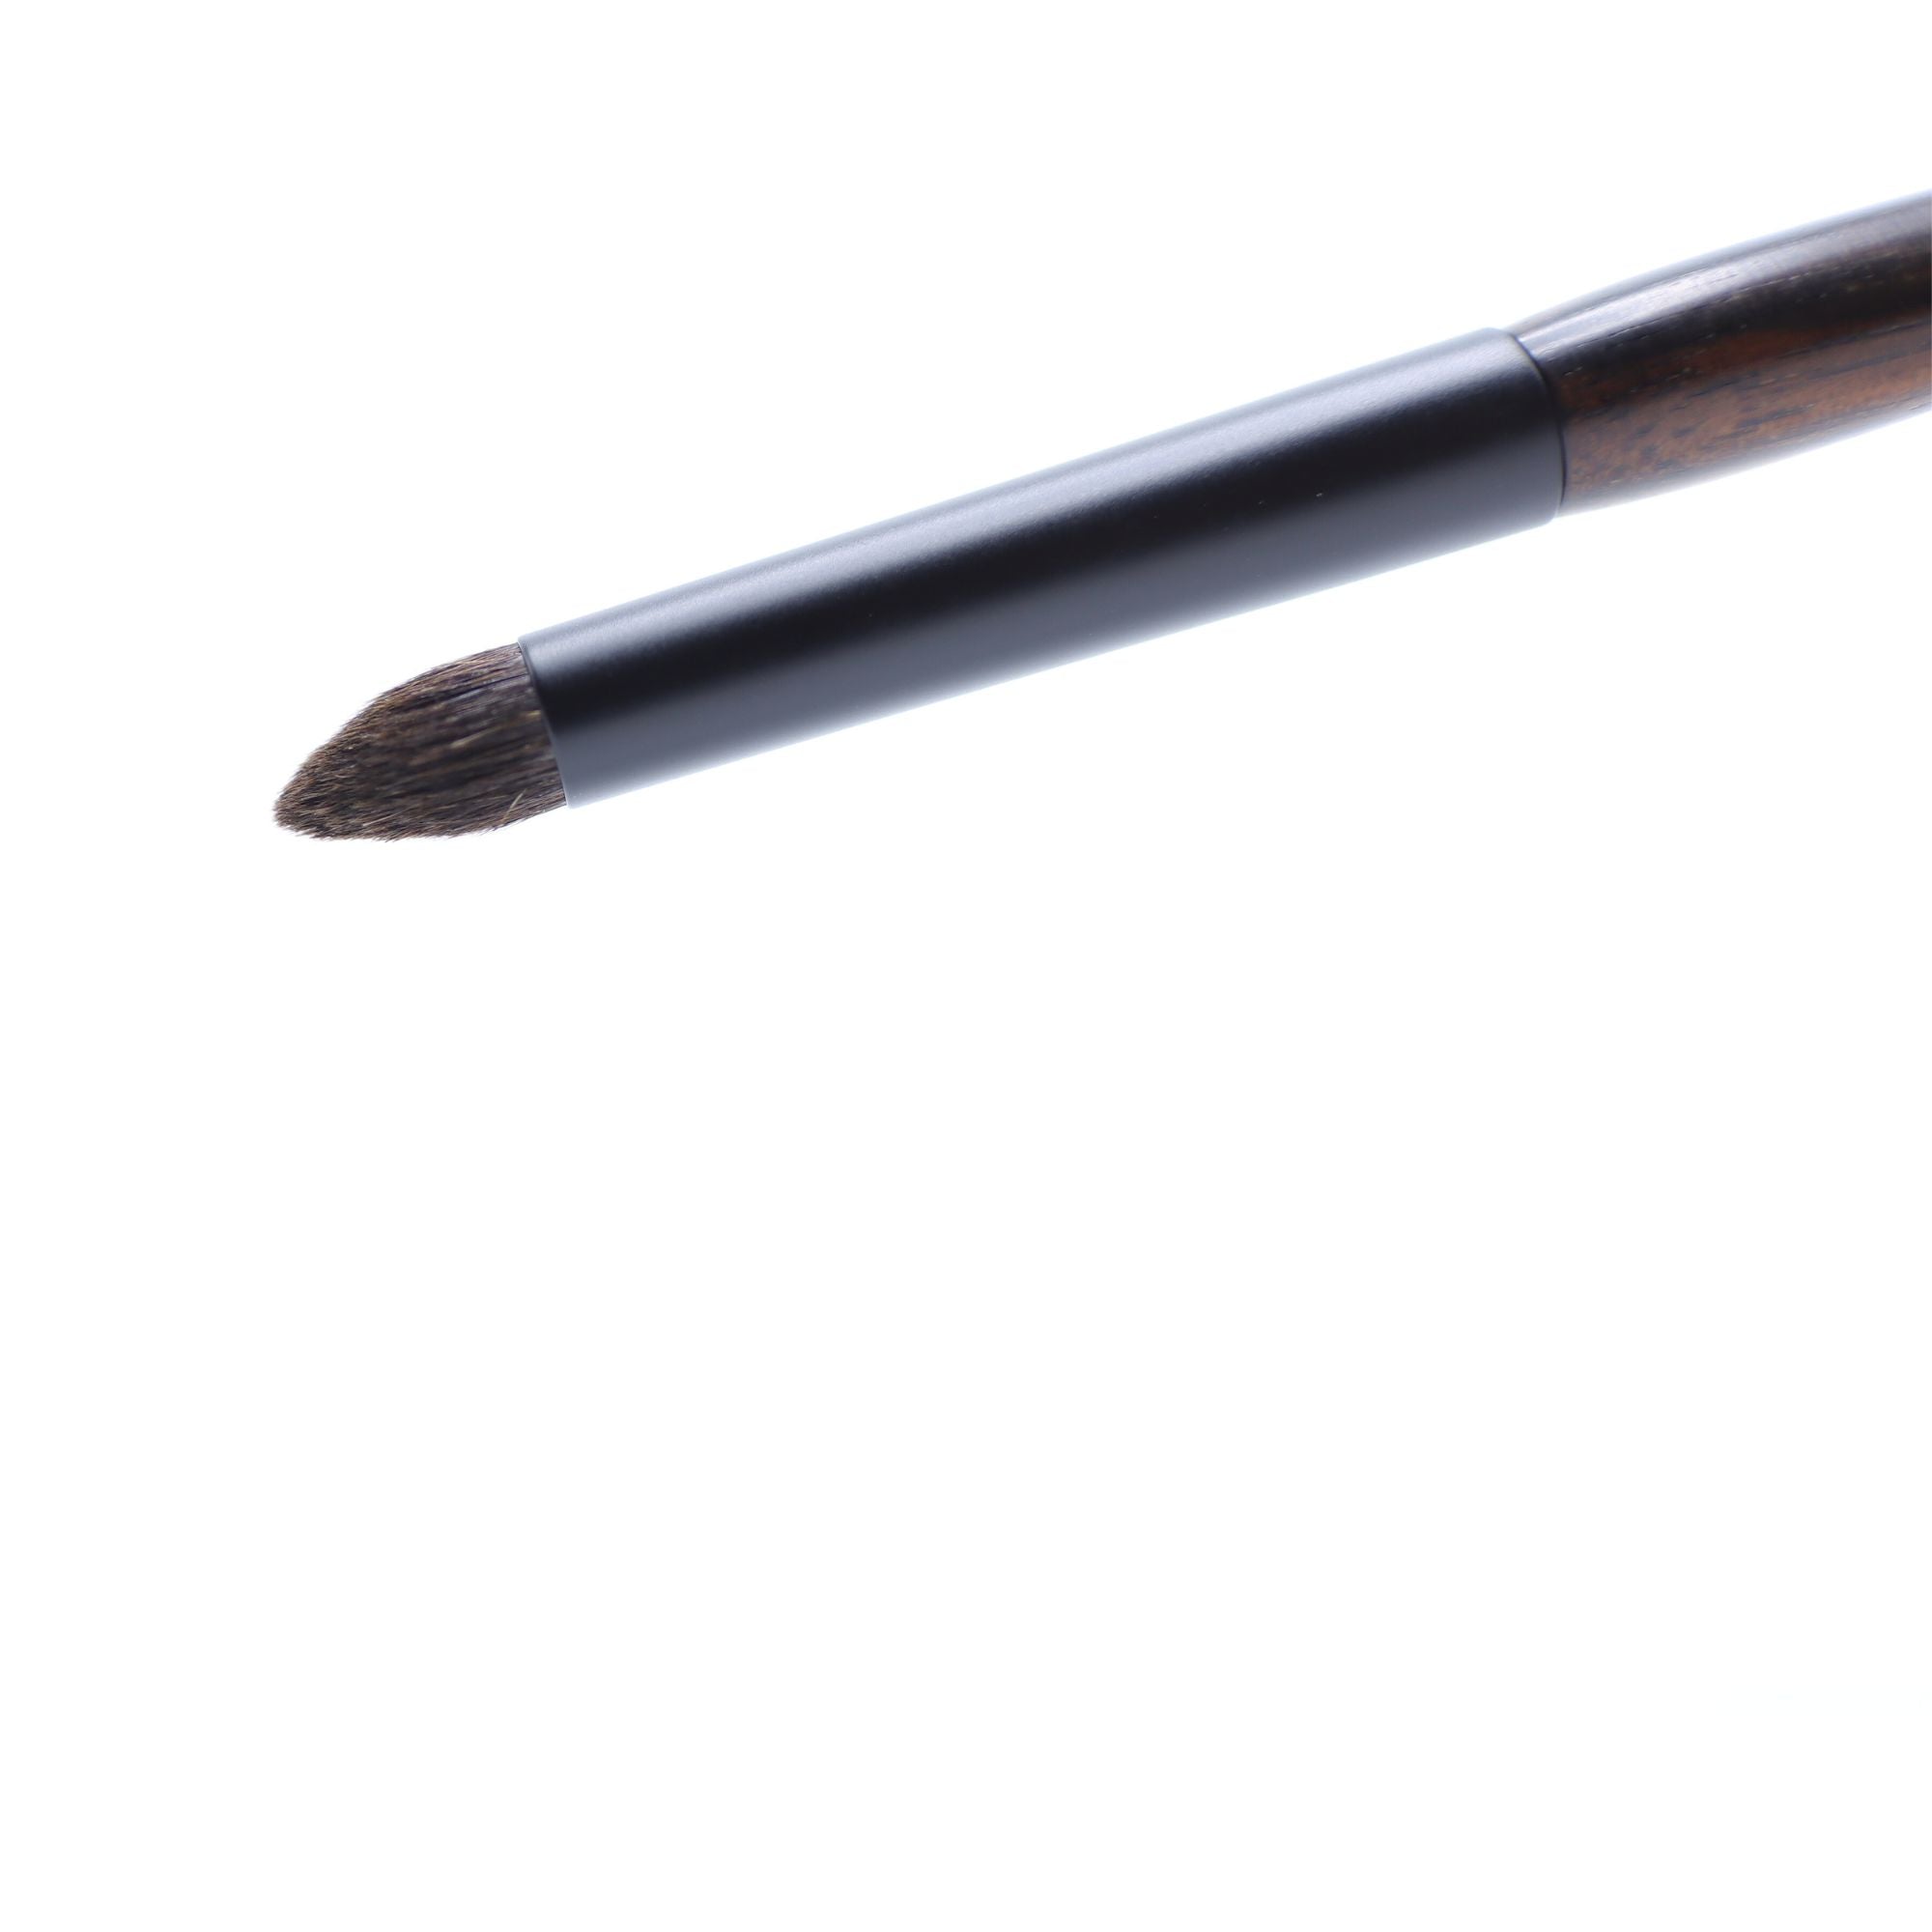 Tauhaus EH-05 Pencil Eyeshadow Brush, Ode Series - Fude Beauty, Japanese Makeup Brushes